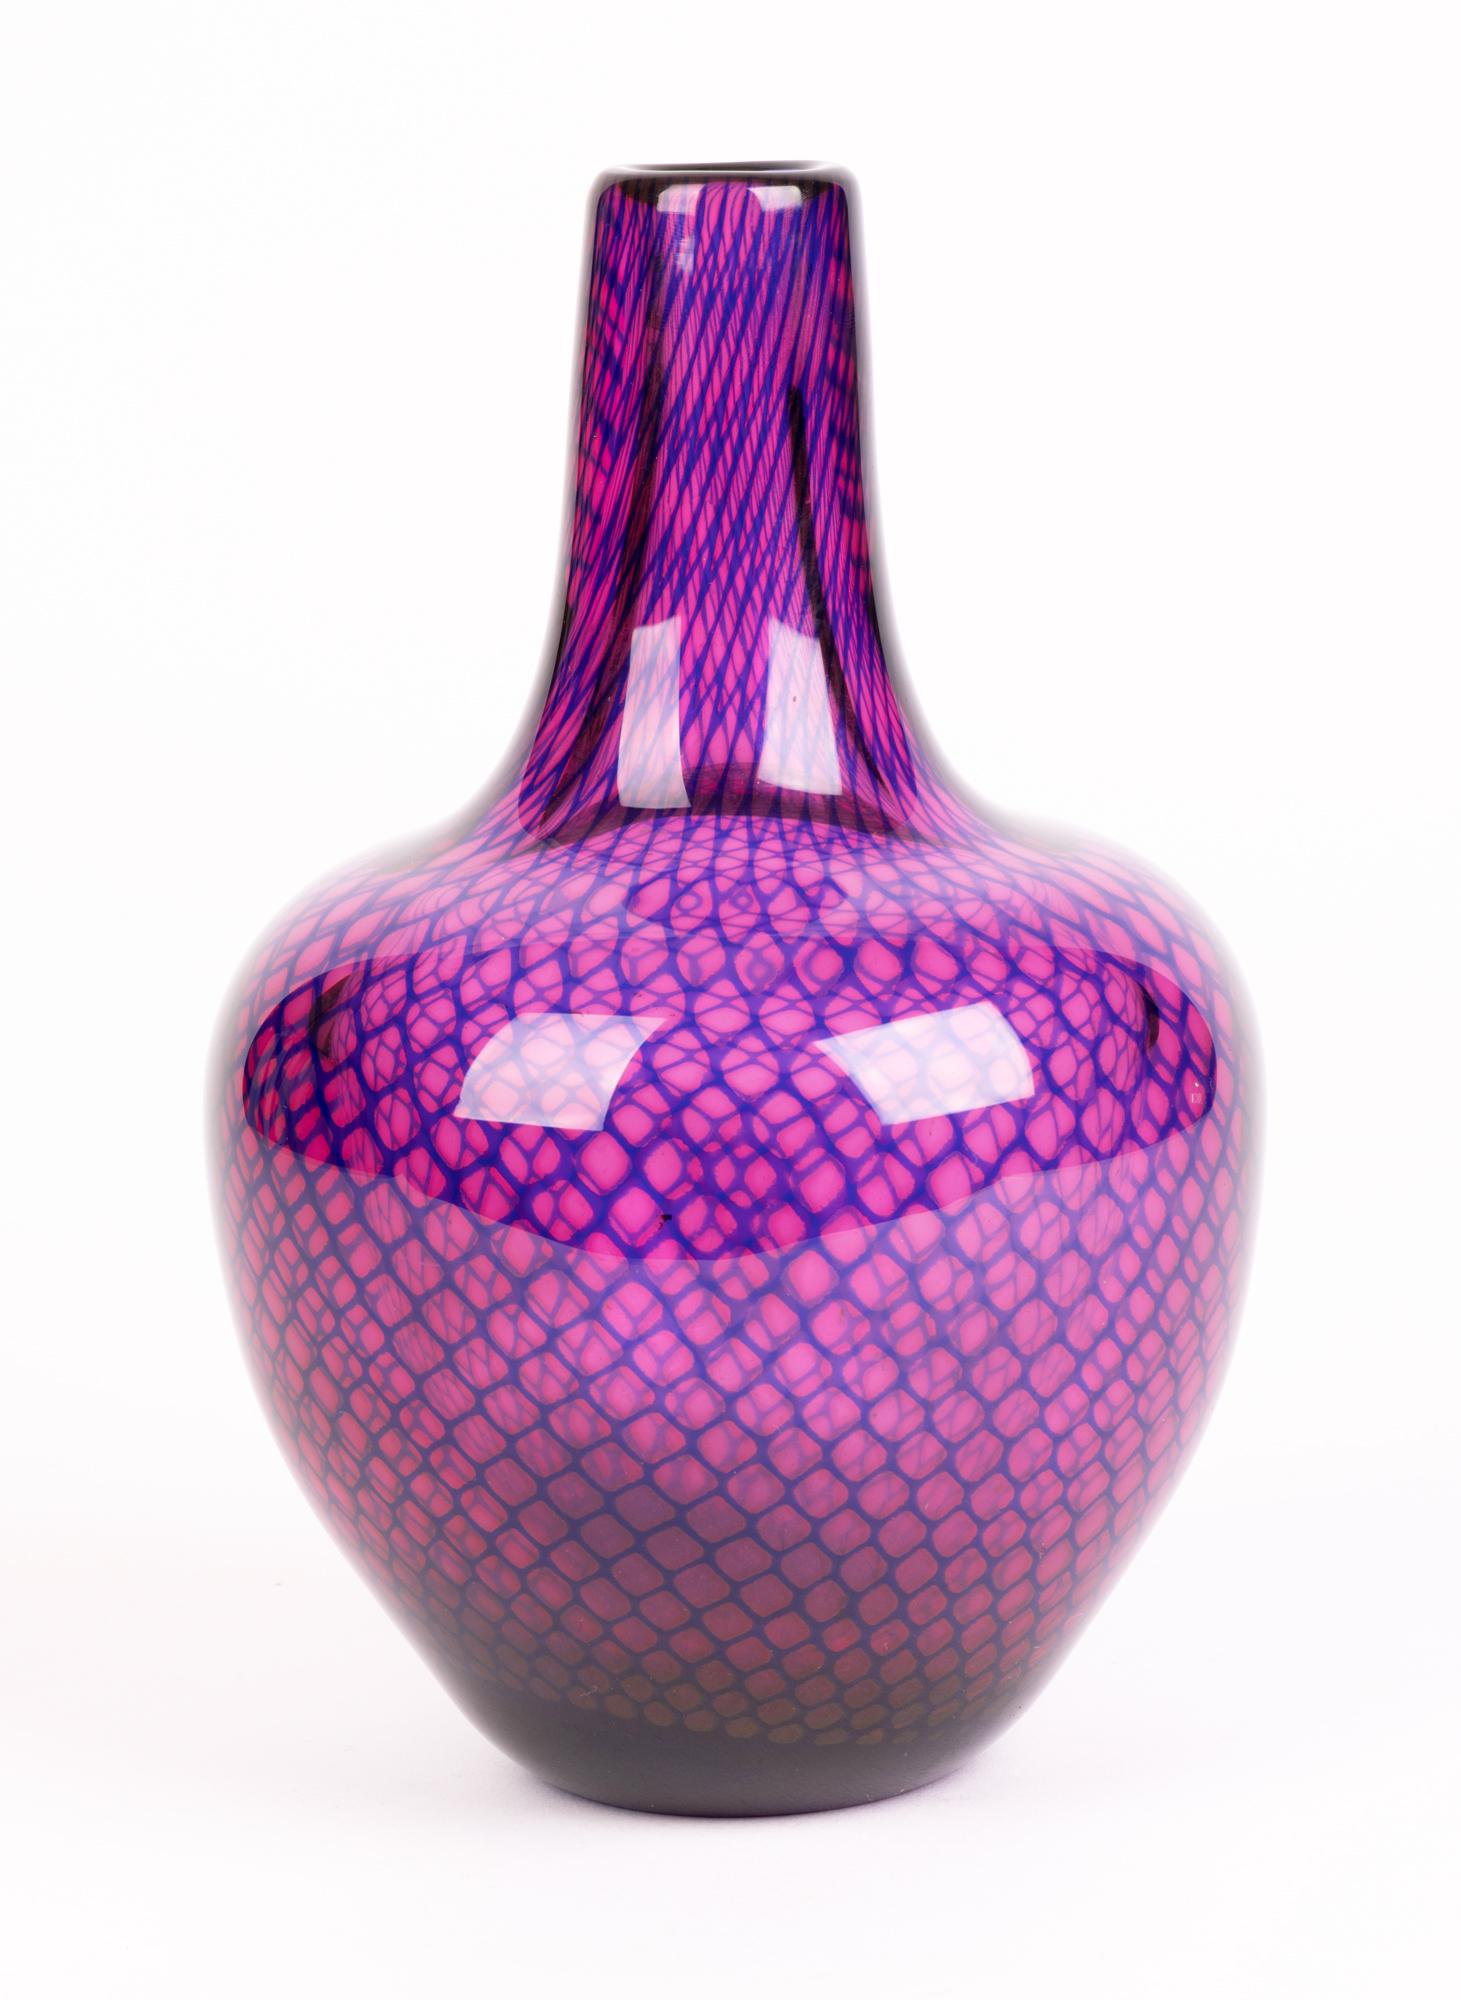 Sven Palmqvist Orrefors Kraka Net Pattern Art Glass Vase For Sale 3